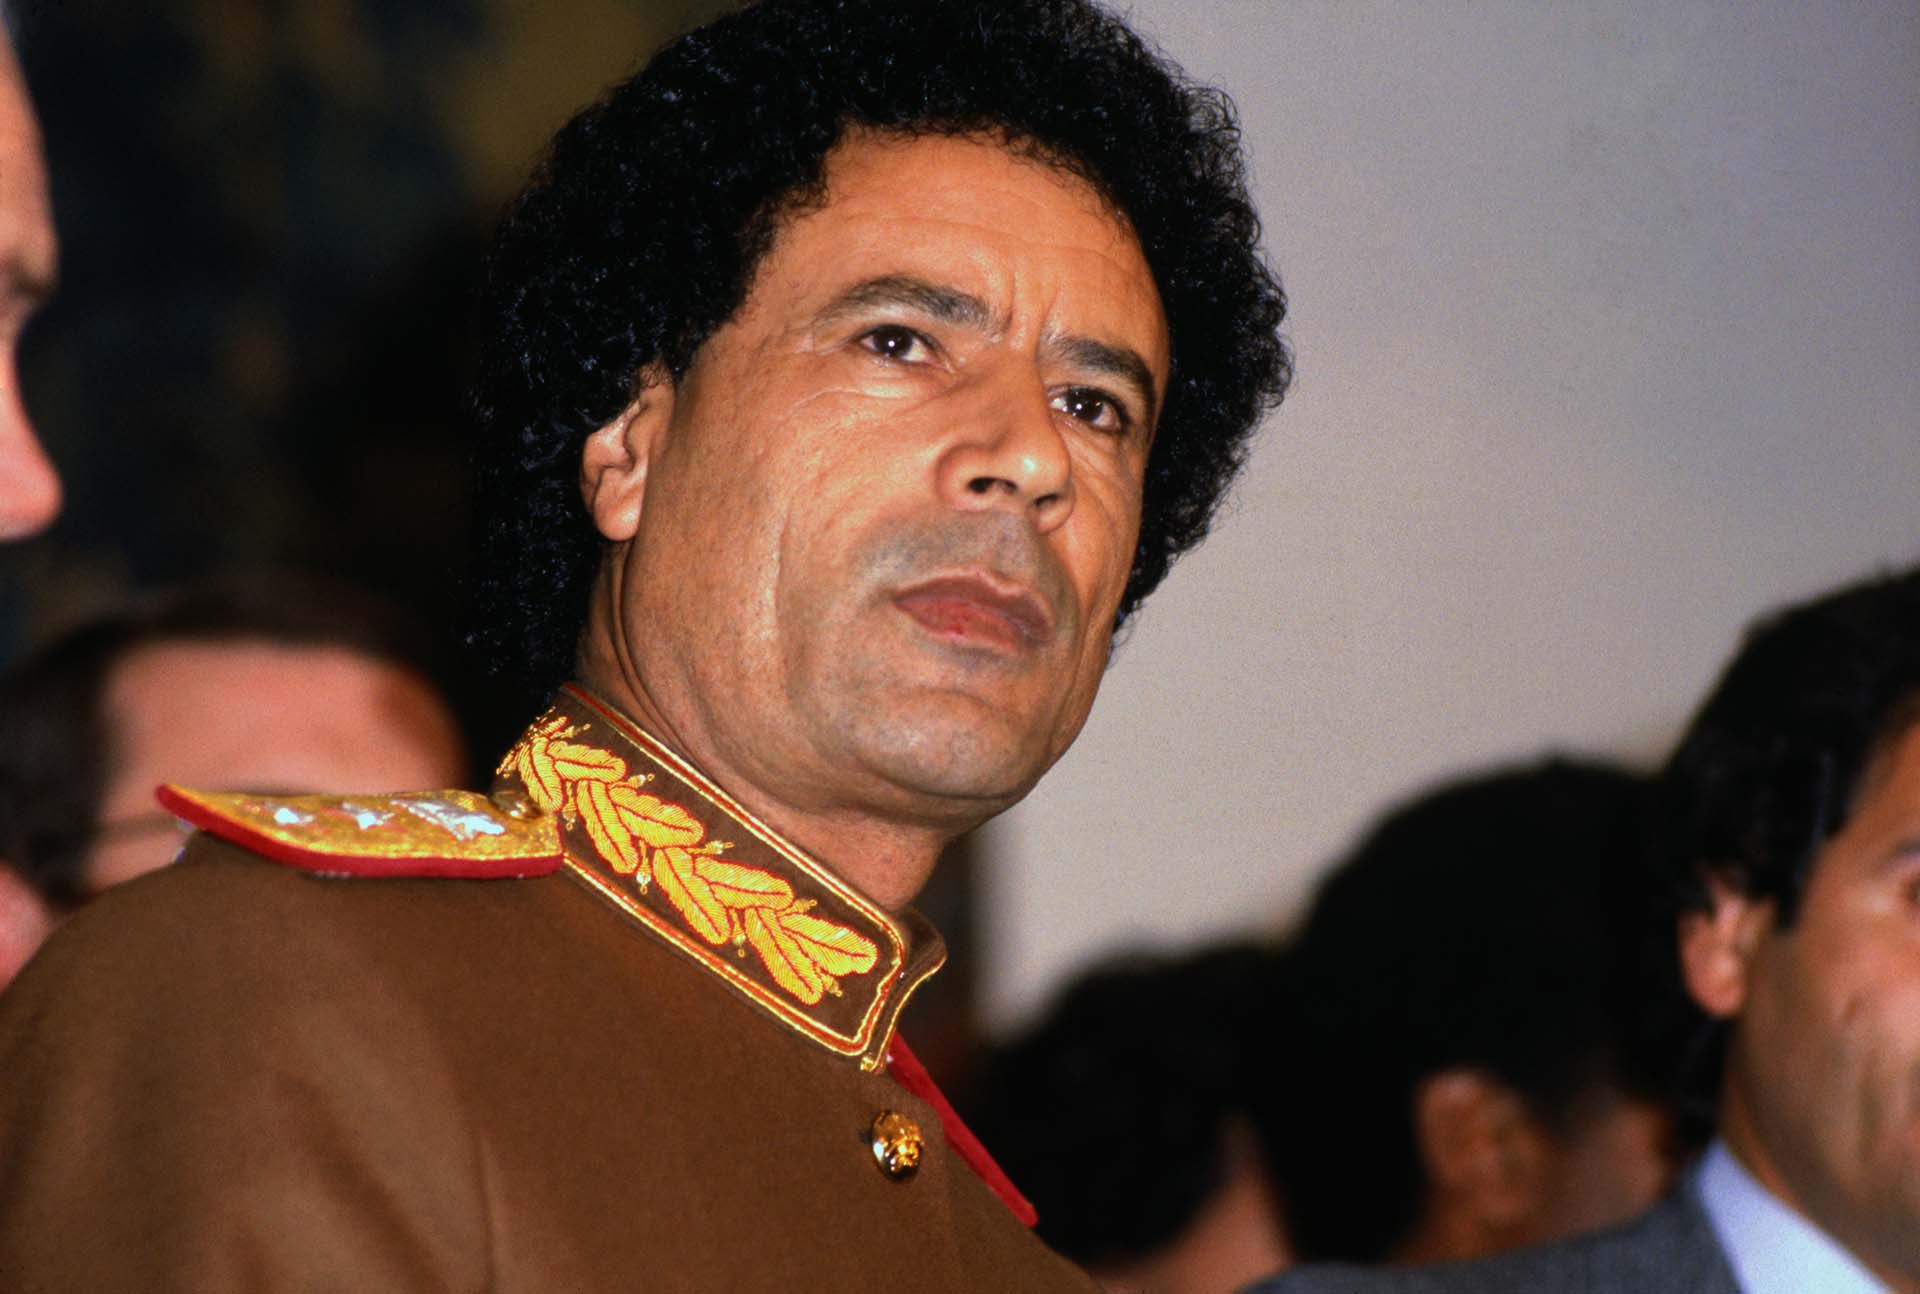 Dopo aver scoperto le crepe nel 1998, Muammar Gheddafi solo nel 2007 si preparò ad iniziare lavori che non furono poi realizzati (Archivio Bateman)